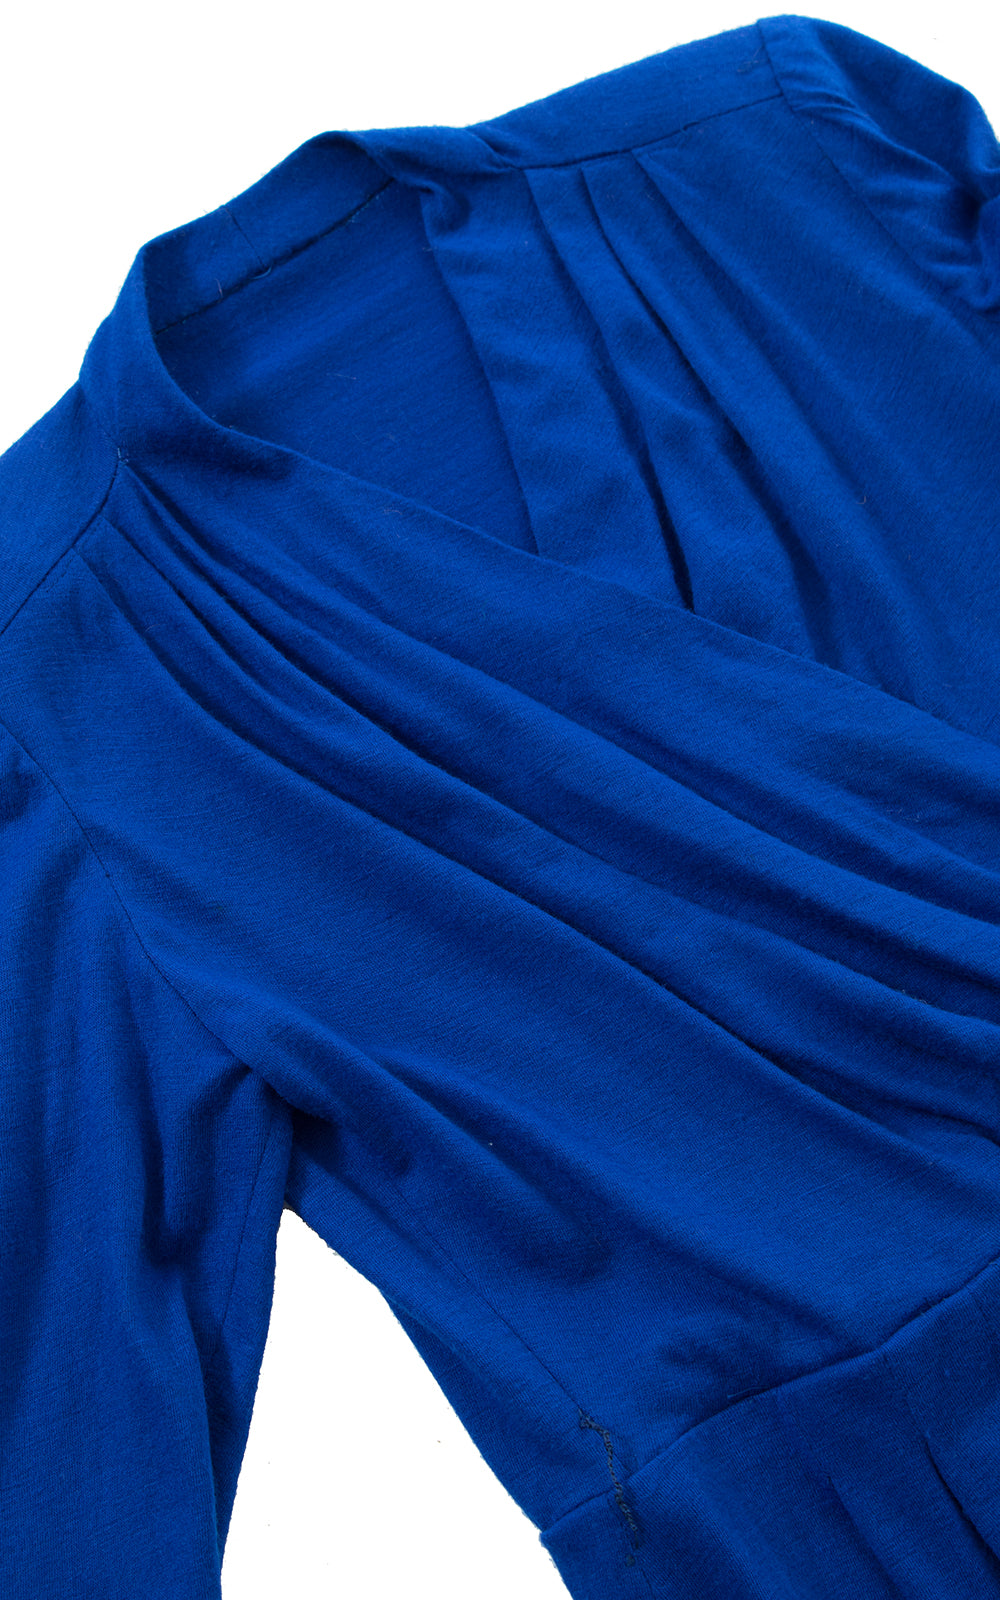 1950s Blue Wool Jersey Dress